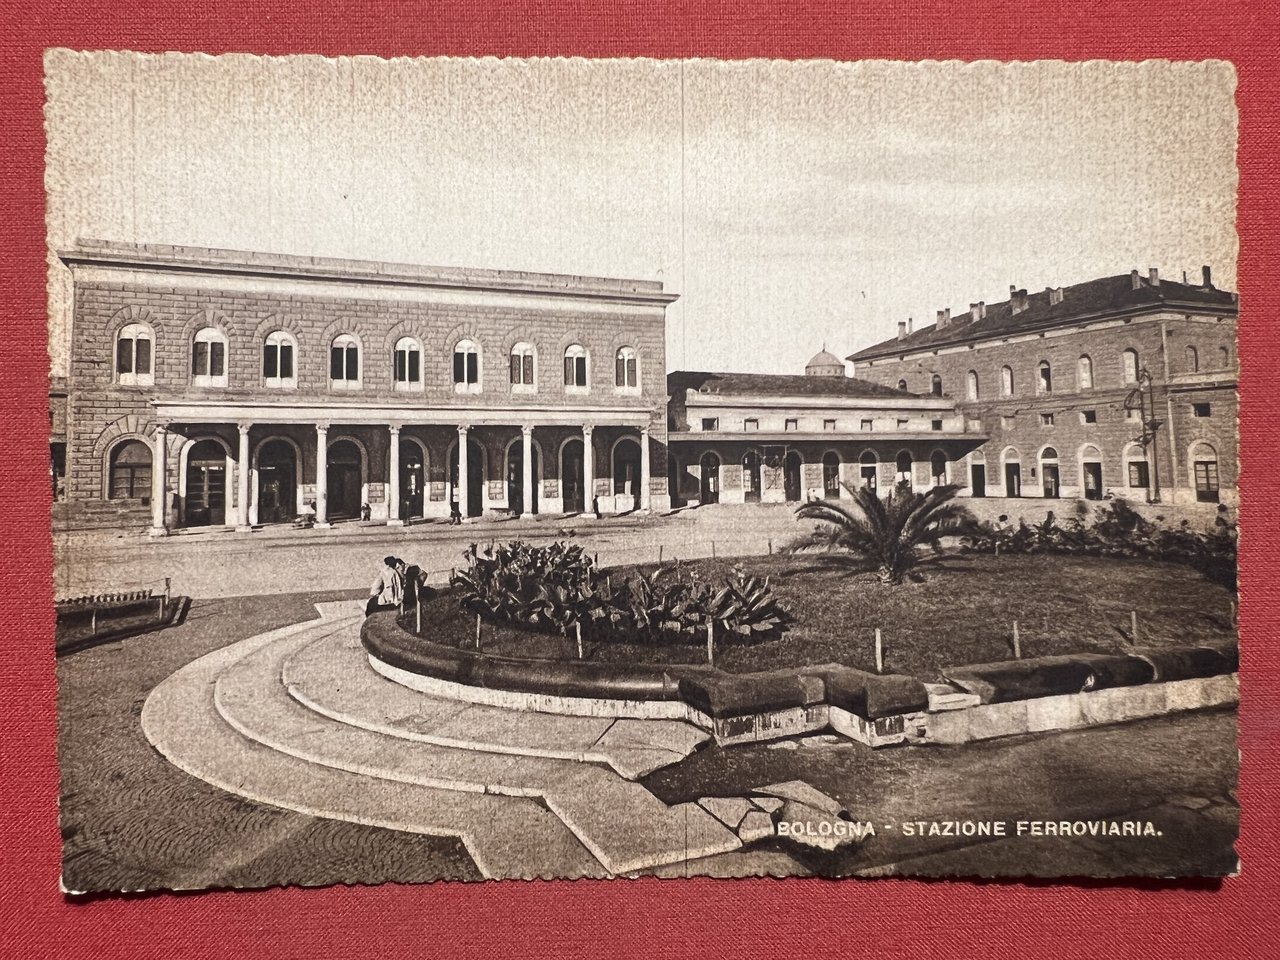 Cartolina - Bologna - Stazione Ferroviaria - 1935 ca.